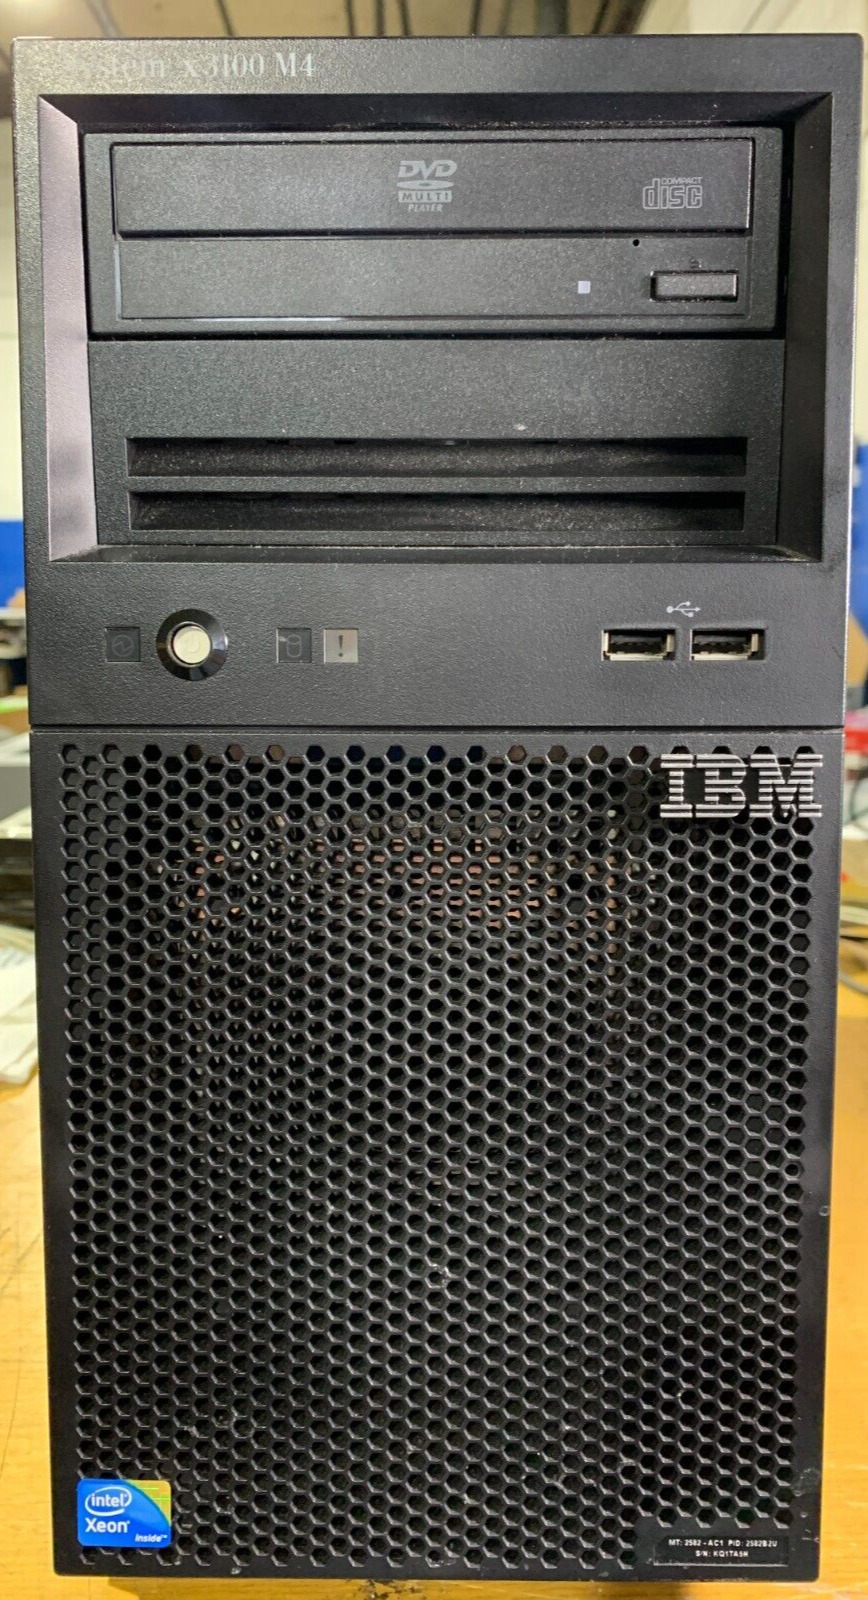 IBM Server System X3100 M4 | Xeon @ 3.10 Ghz | 8GB | 250GB HDD No OS (IG-PC26)